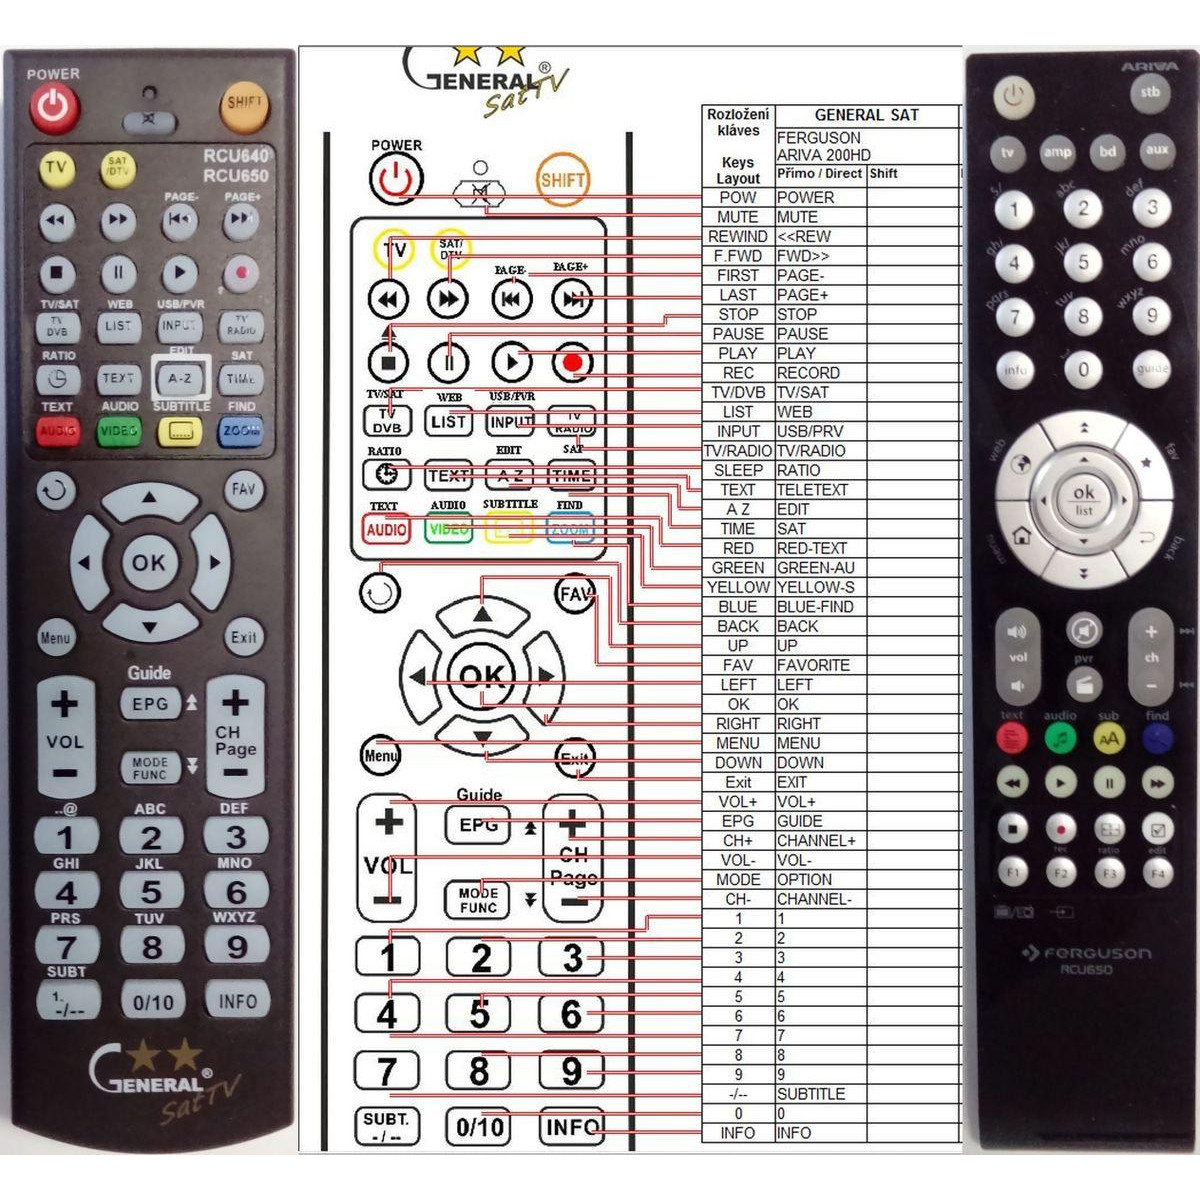 More about FERGUSON RCU-660 plus ovládání TV (mini TV) - dálkový ovladač duplikát kompatibilní